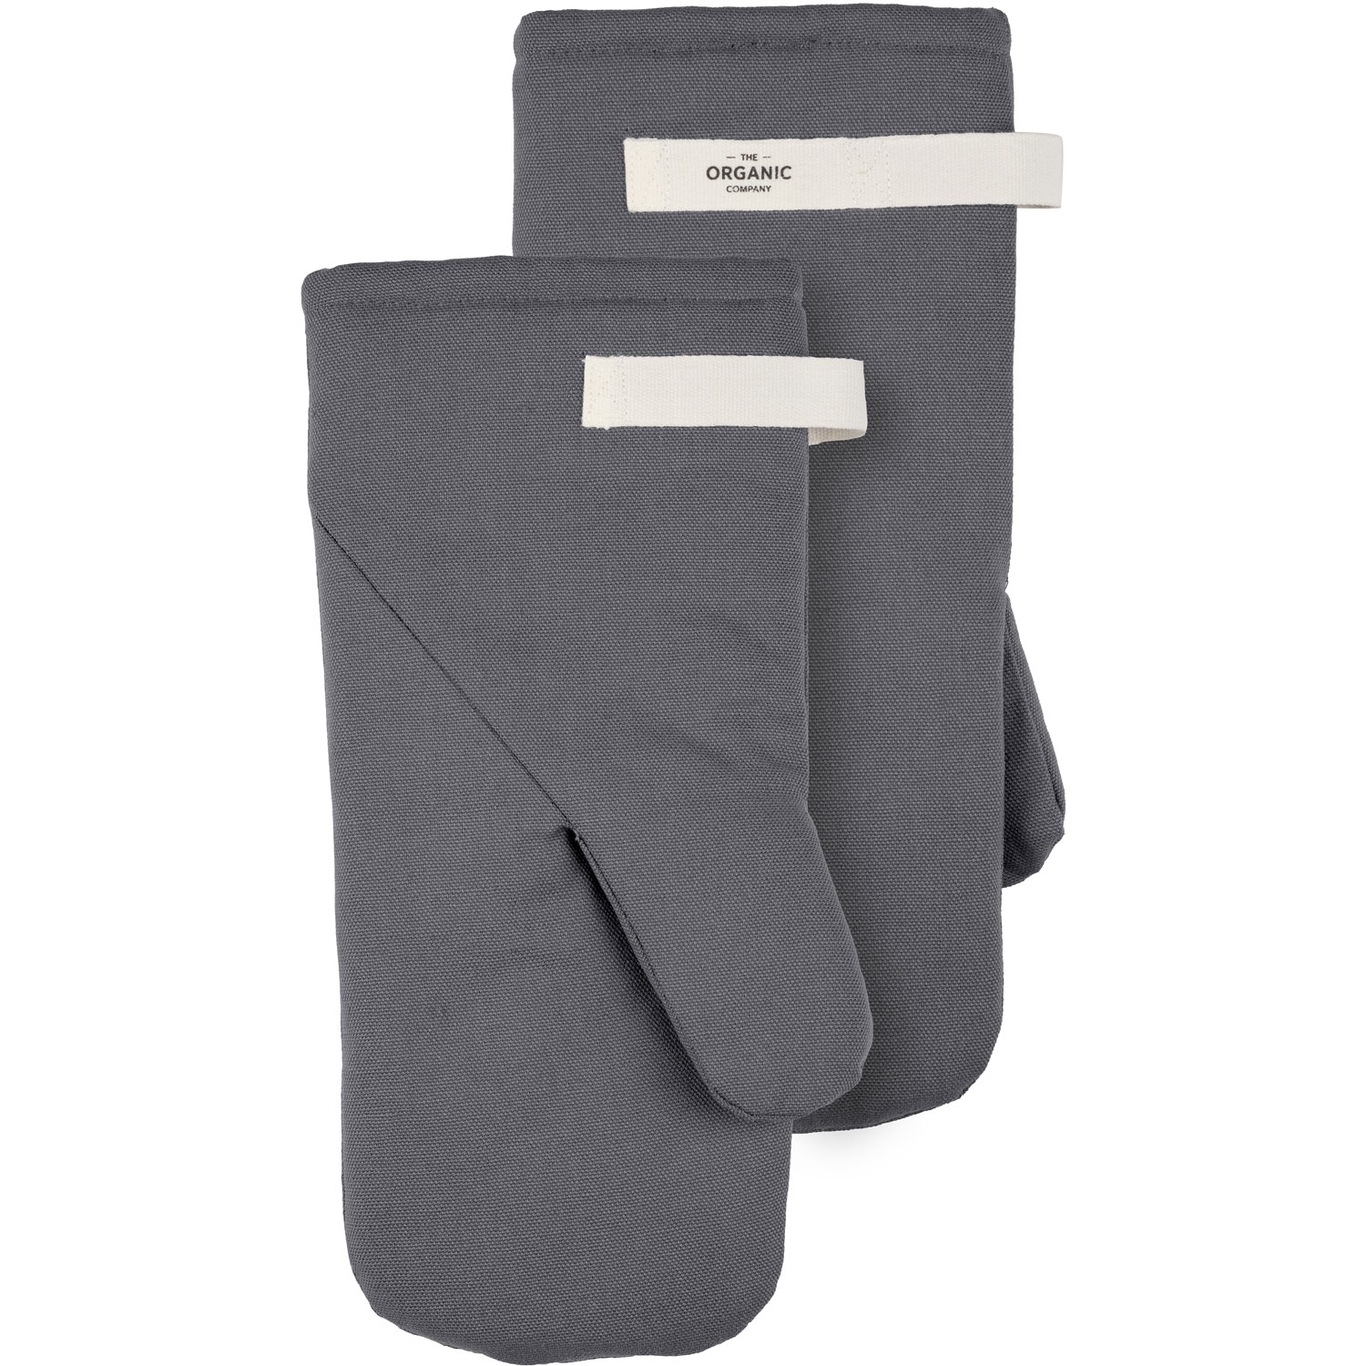 Oven Glove Medium 2-pack, Dark Grey